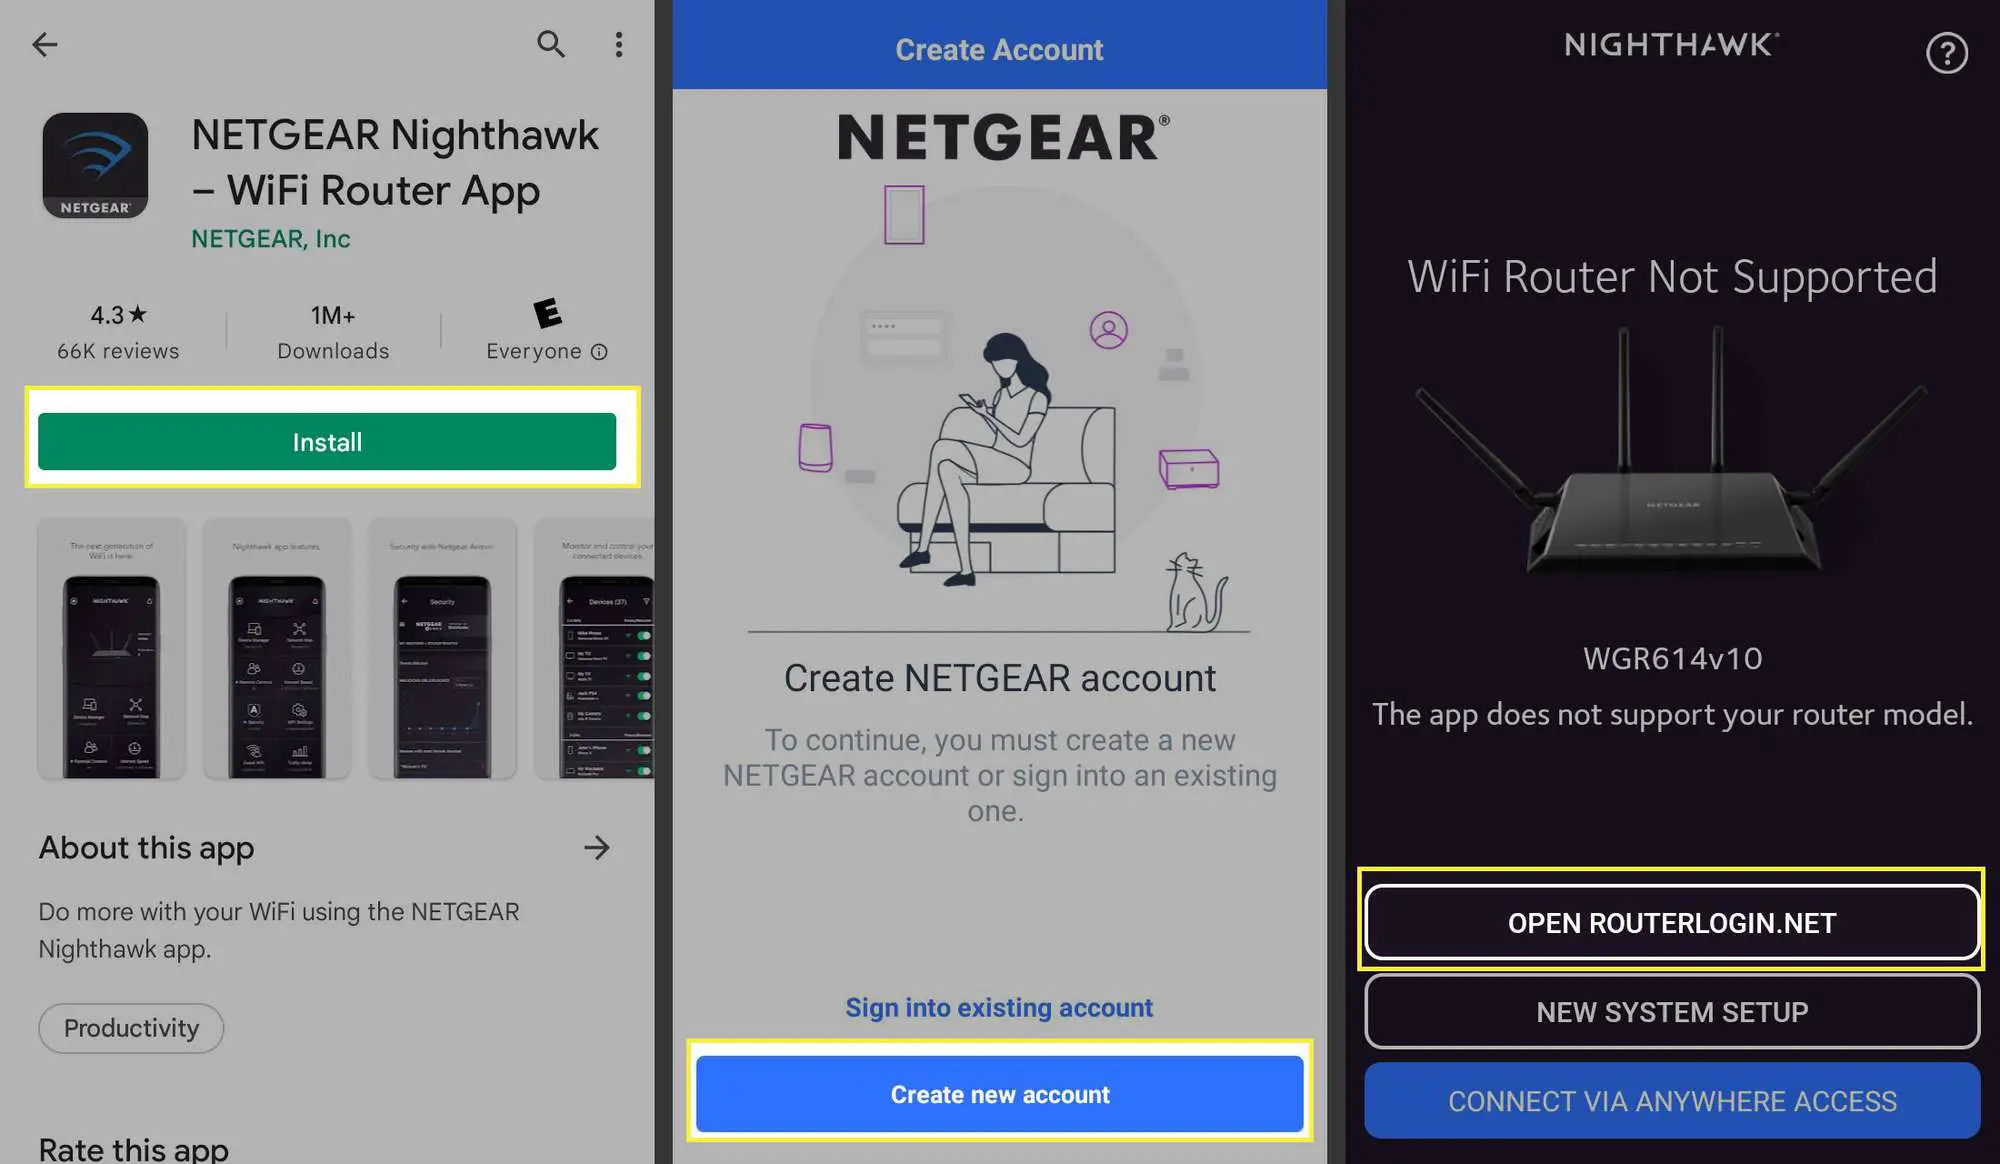 Instale, crie uma nova conta e abra RouterLogin.net destacado no aplicativo Netgear Nighthawk Wi-Fi Router